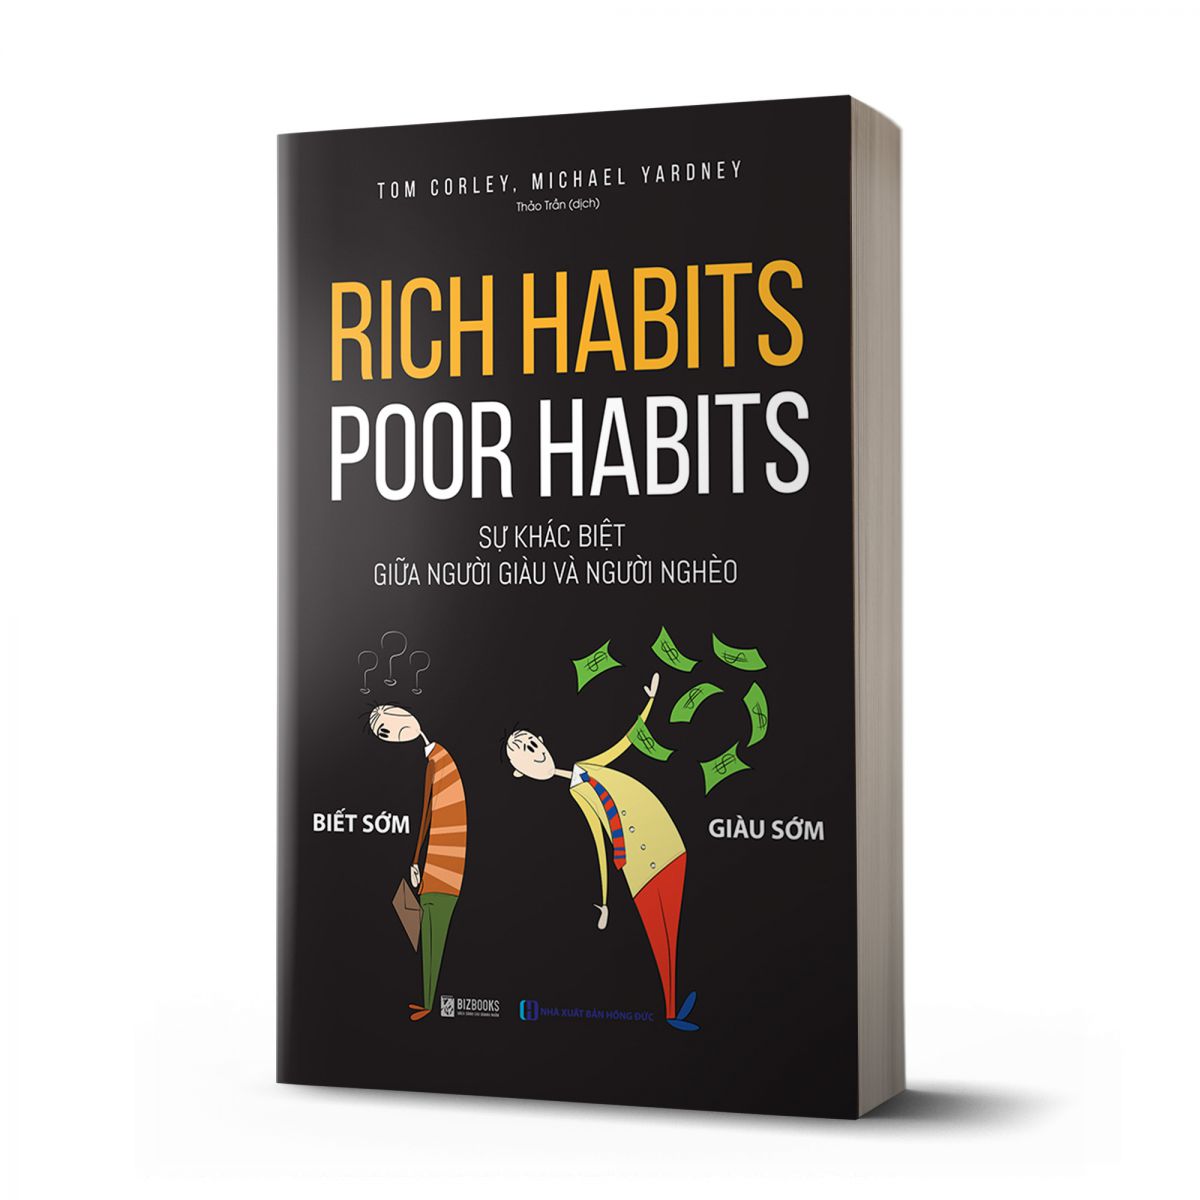 Rich habits, poor habits: Sự khác biệt giữa người giàu và người nghèo